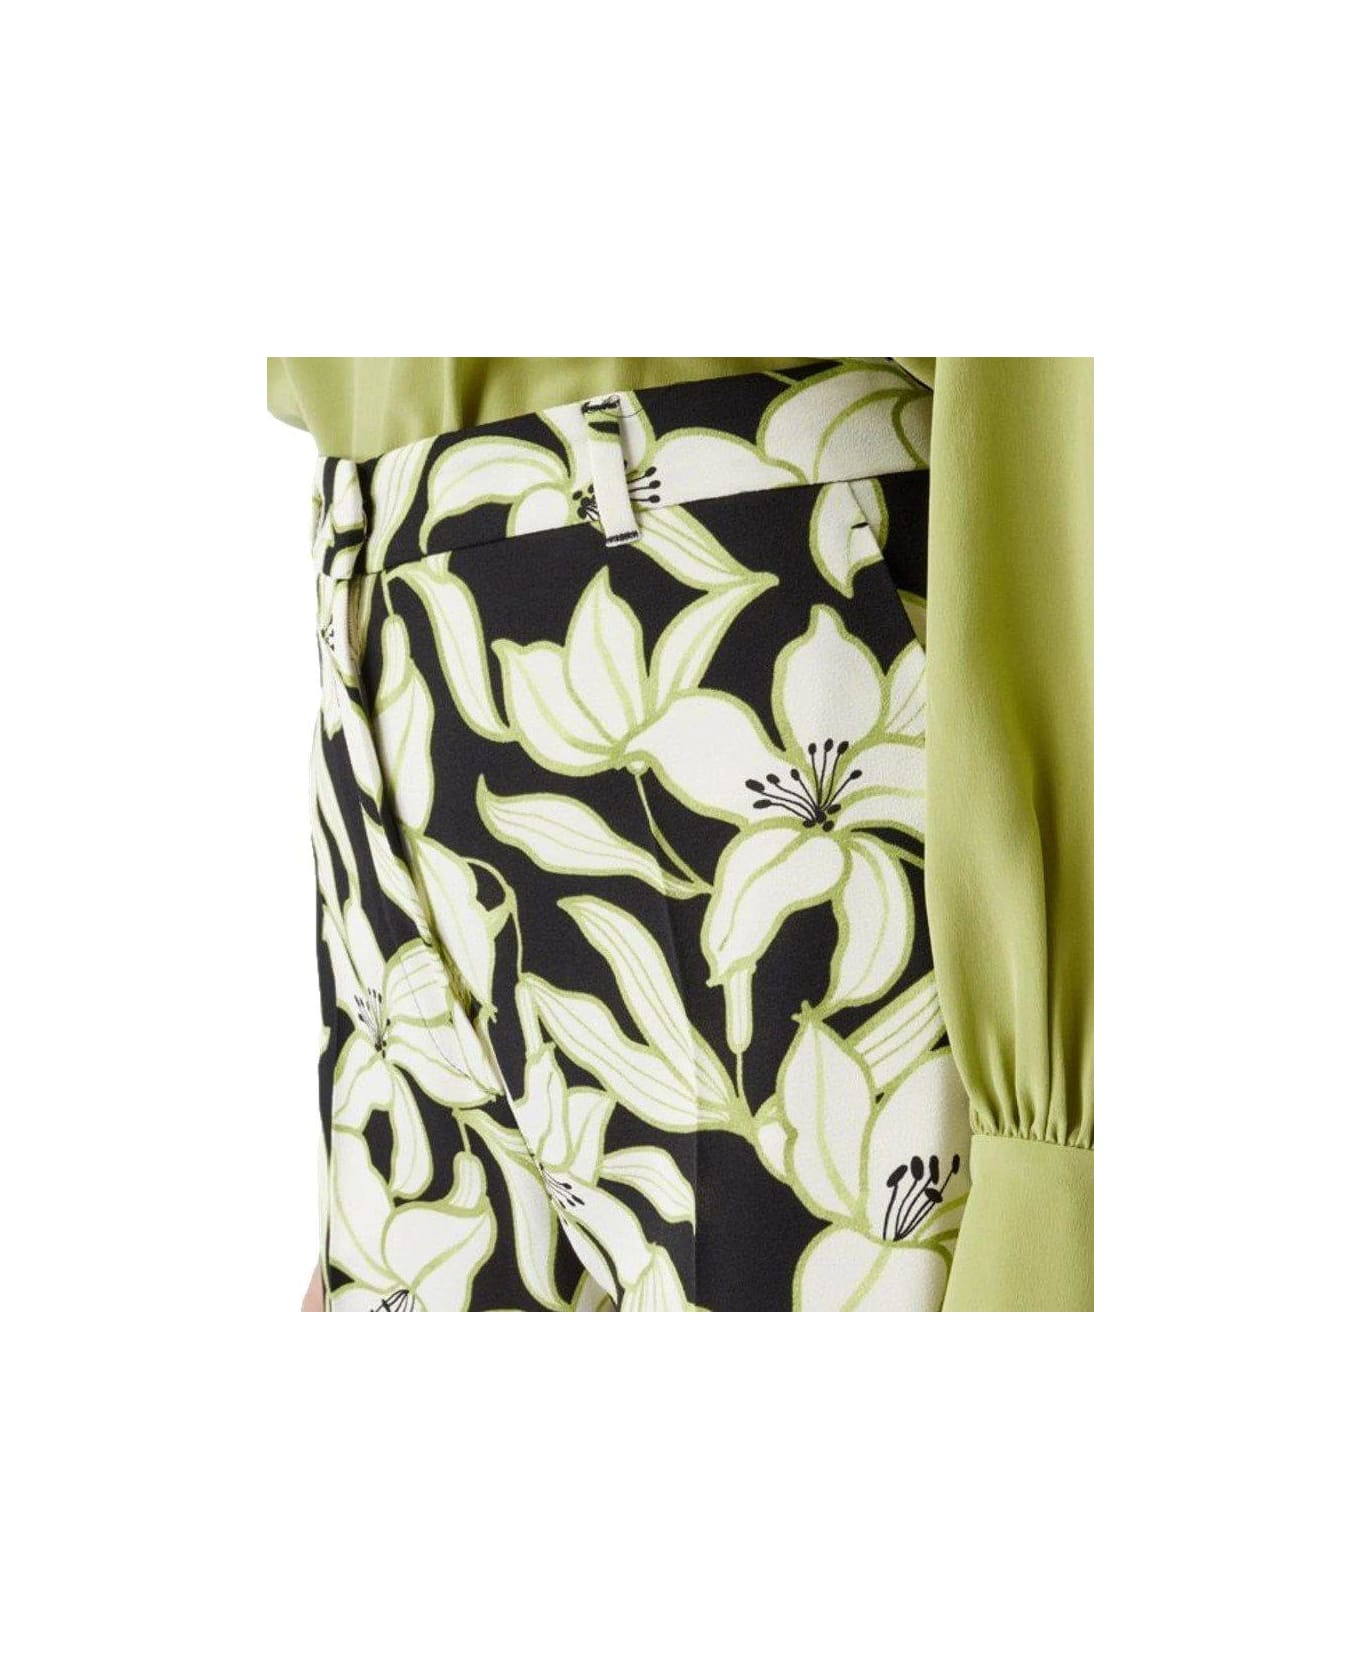 Max Mara Studio Floral Printed High-waisted Pants - Black/green